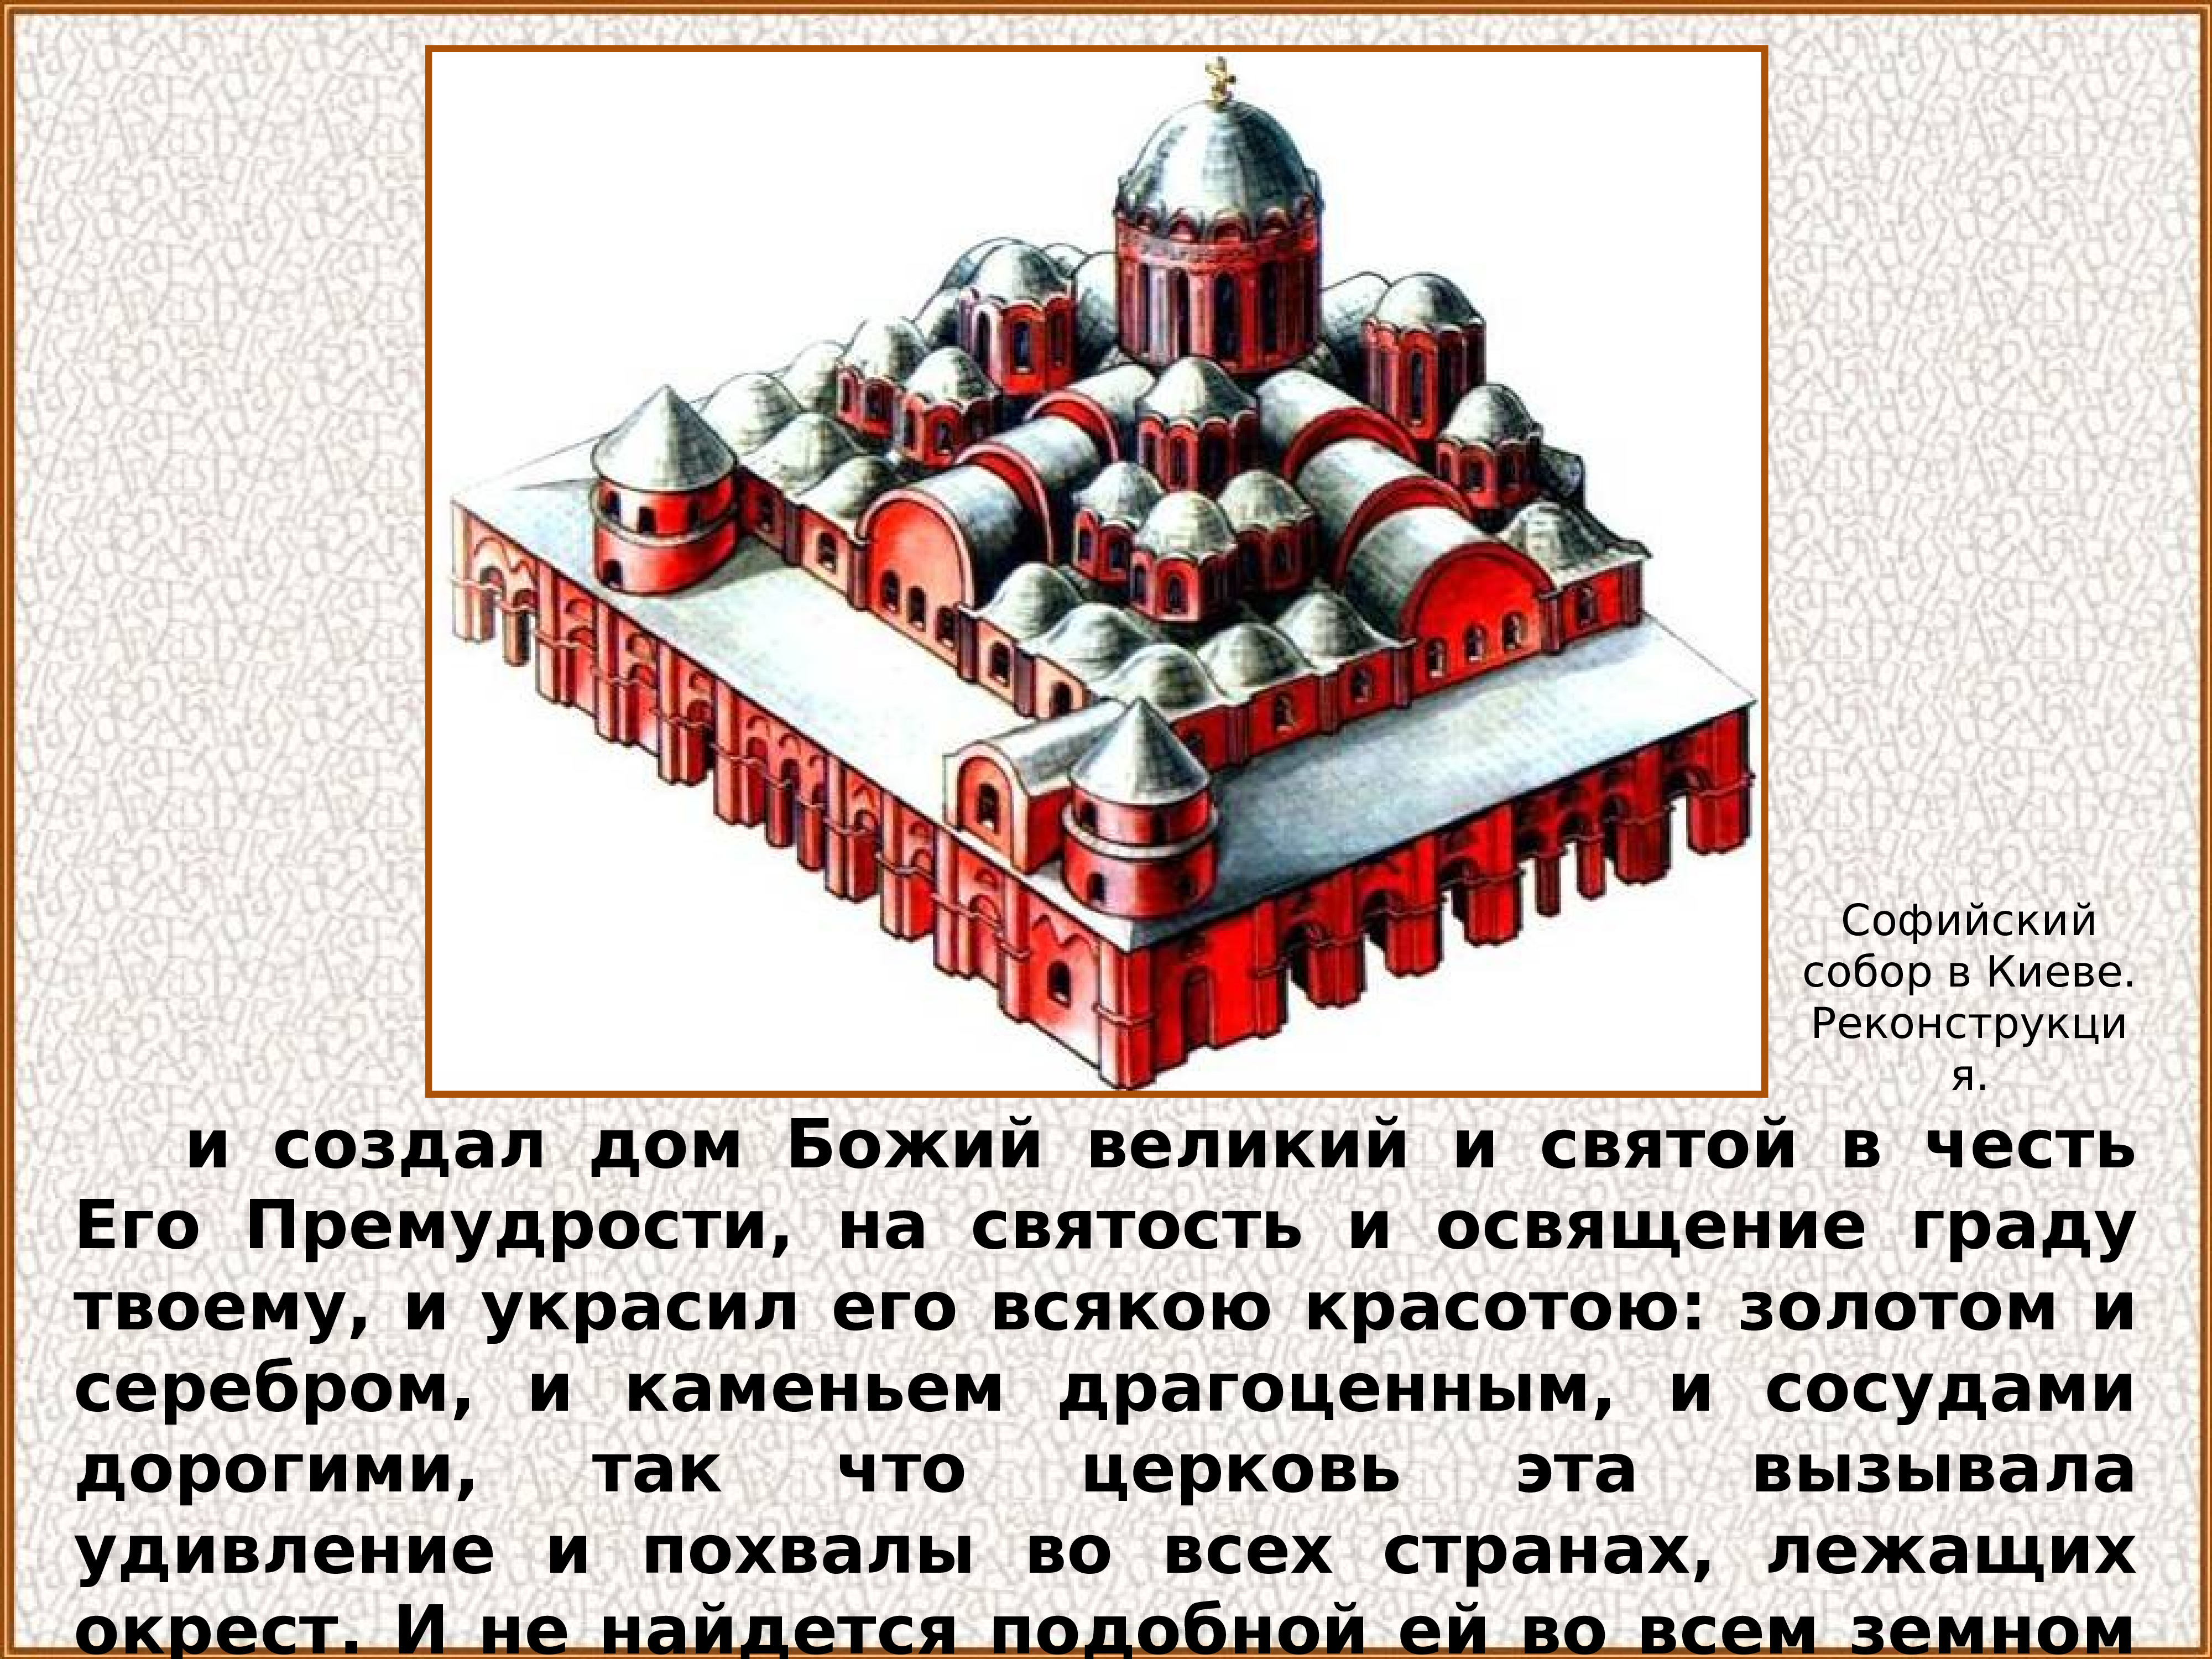 Софийский собор в Киеве плинфа